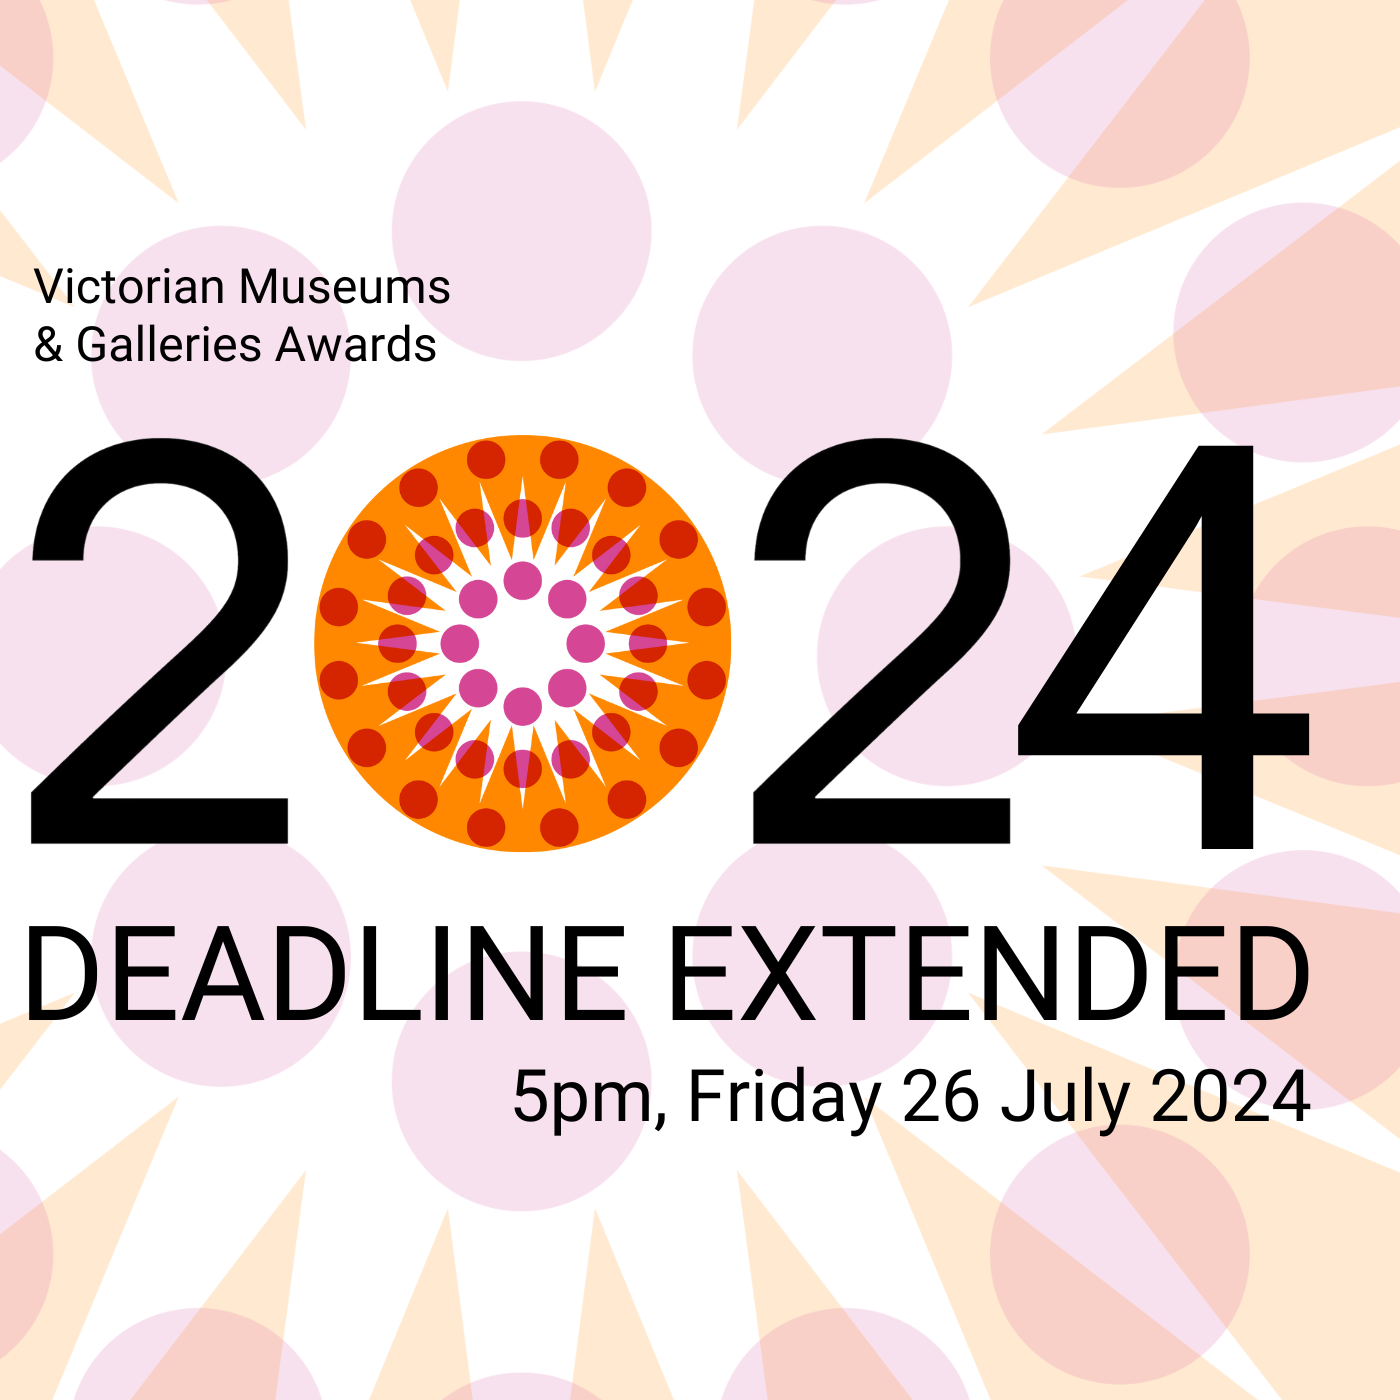 VMAGA 2024 Deadline Extended (2000 x 1400 px)